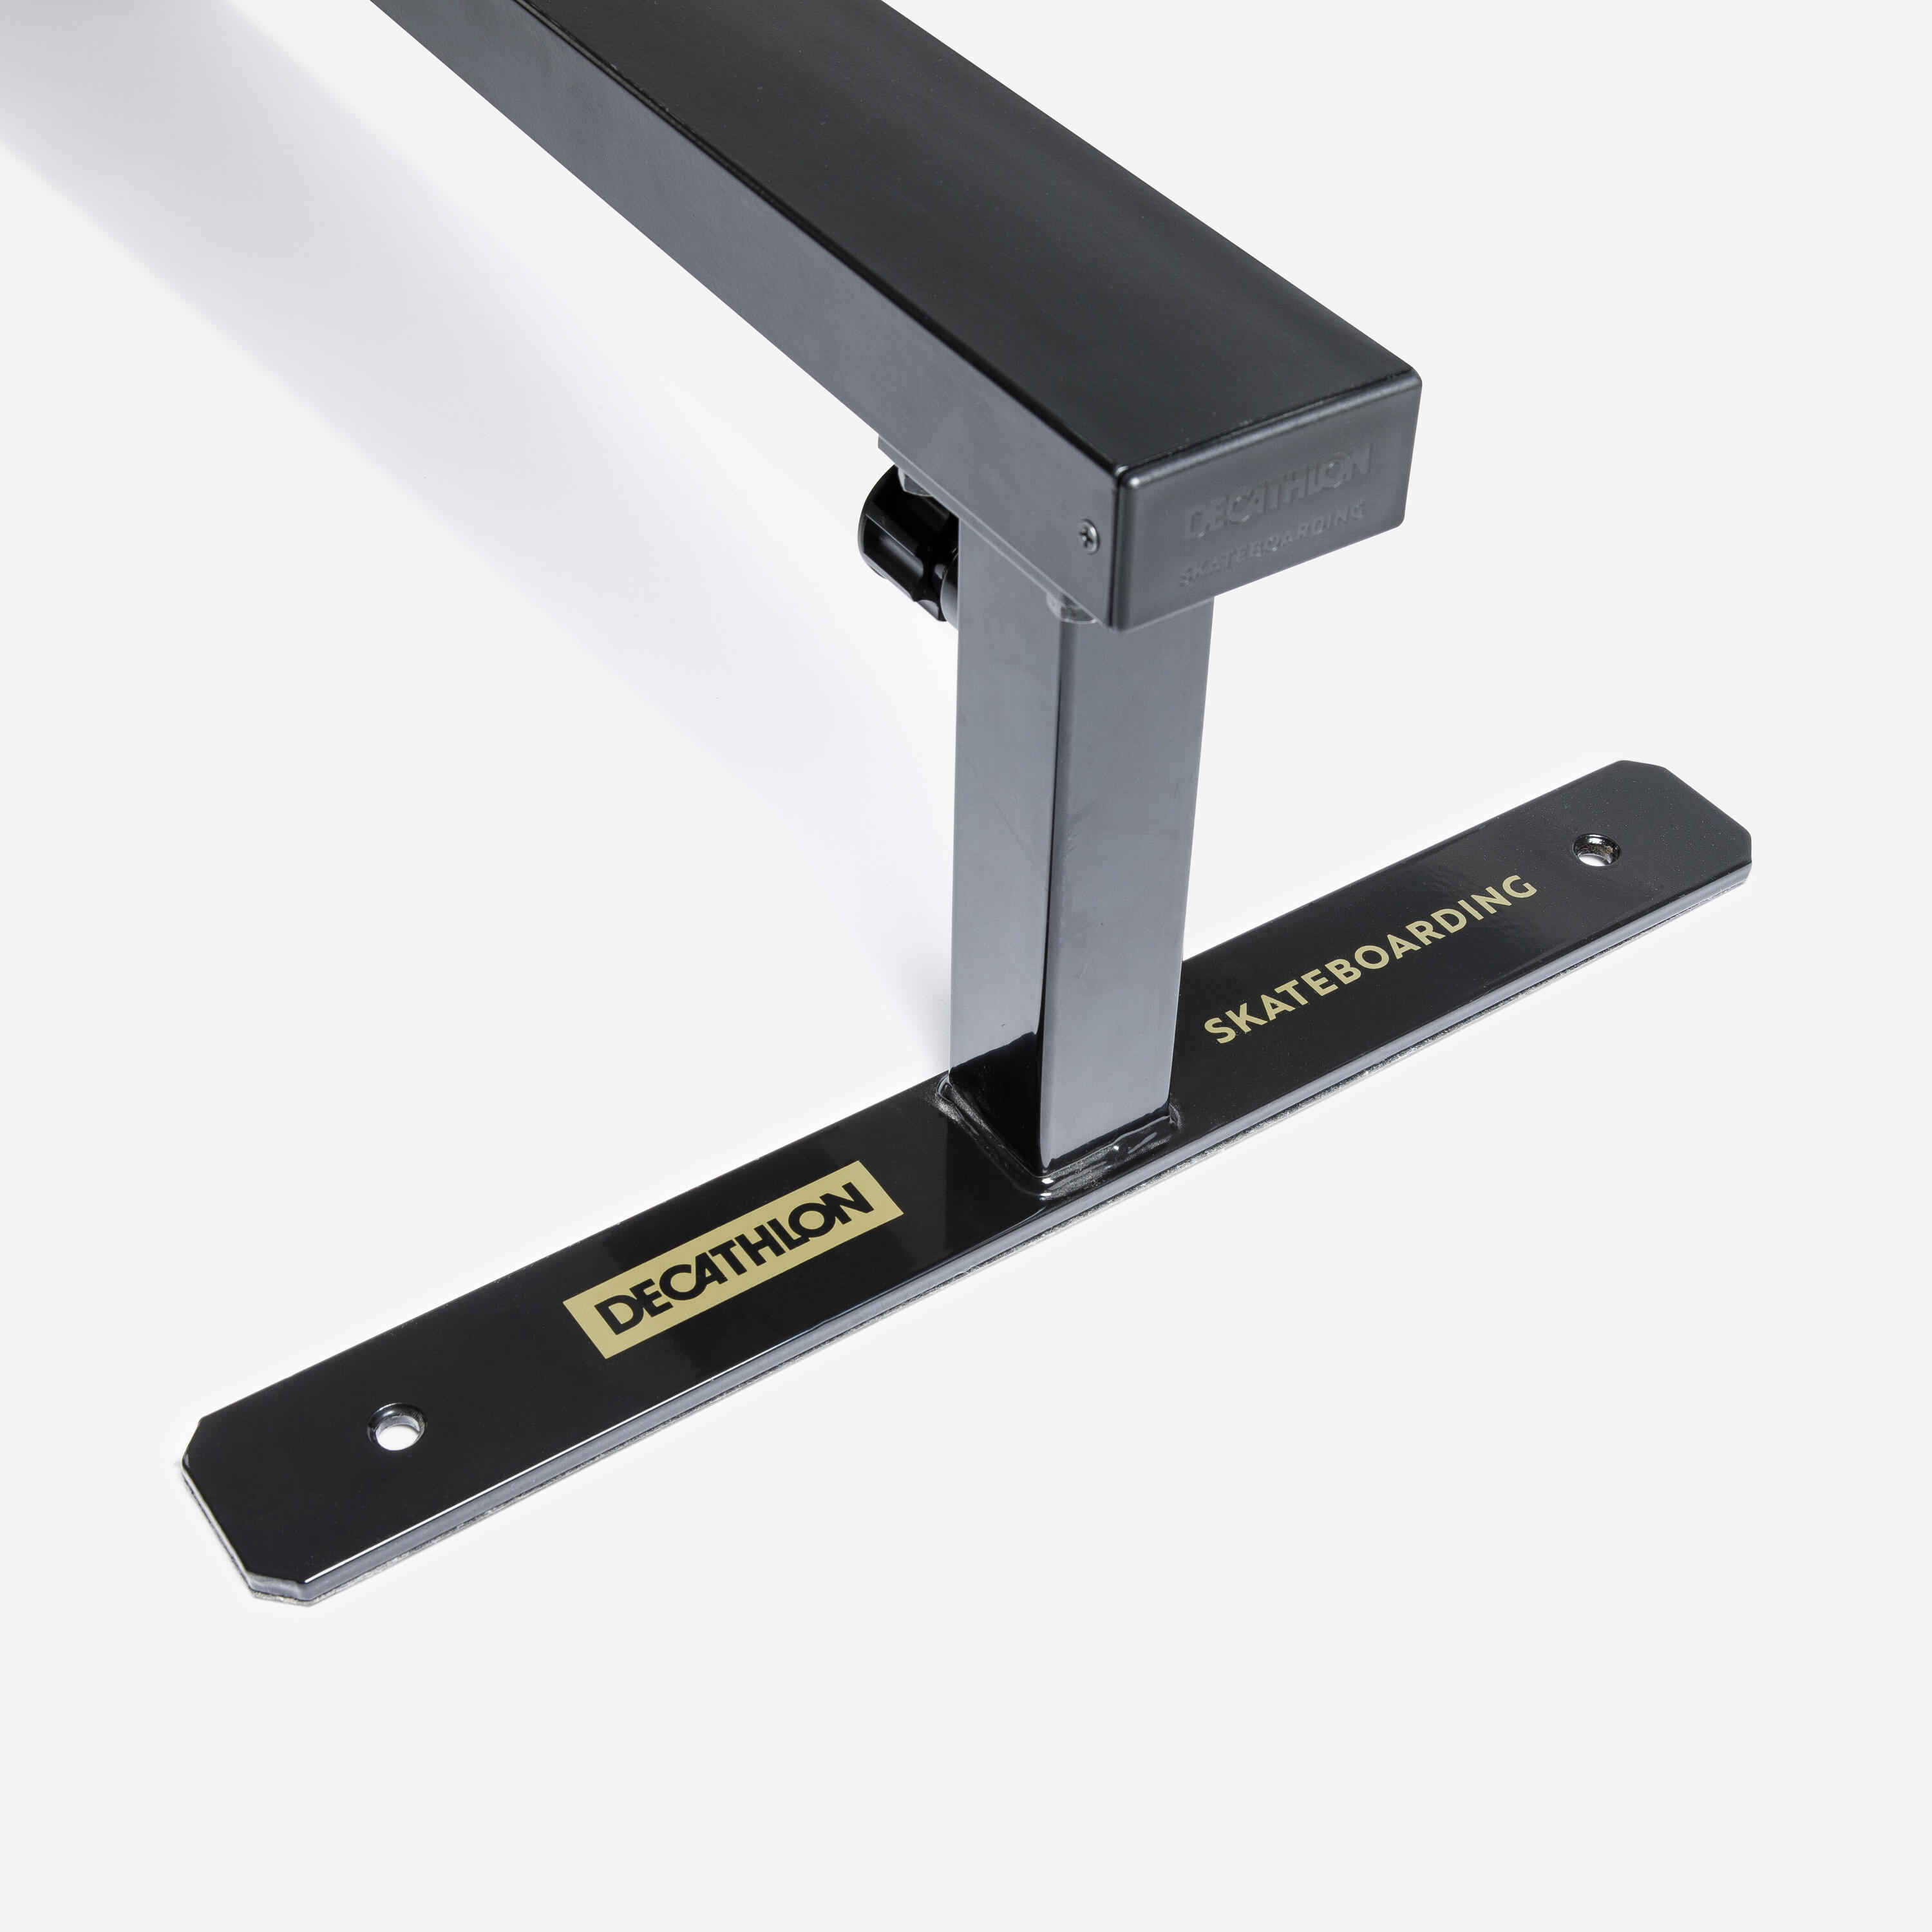 Adjustable and Connectable Skateboarding Square Slide / Grind Rail - Black 9/13